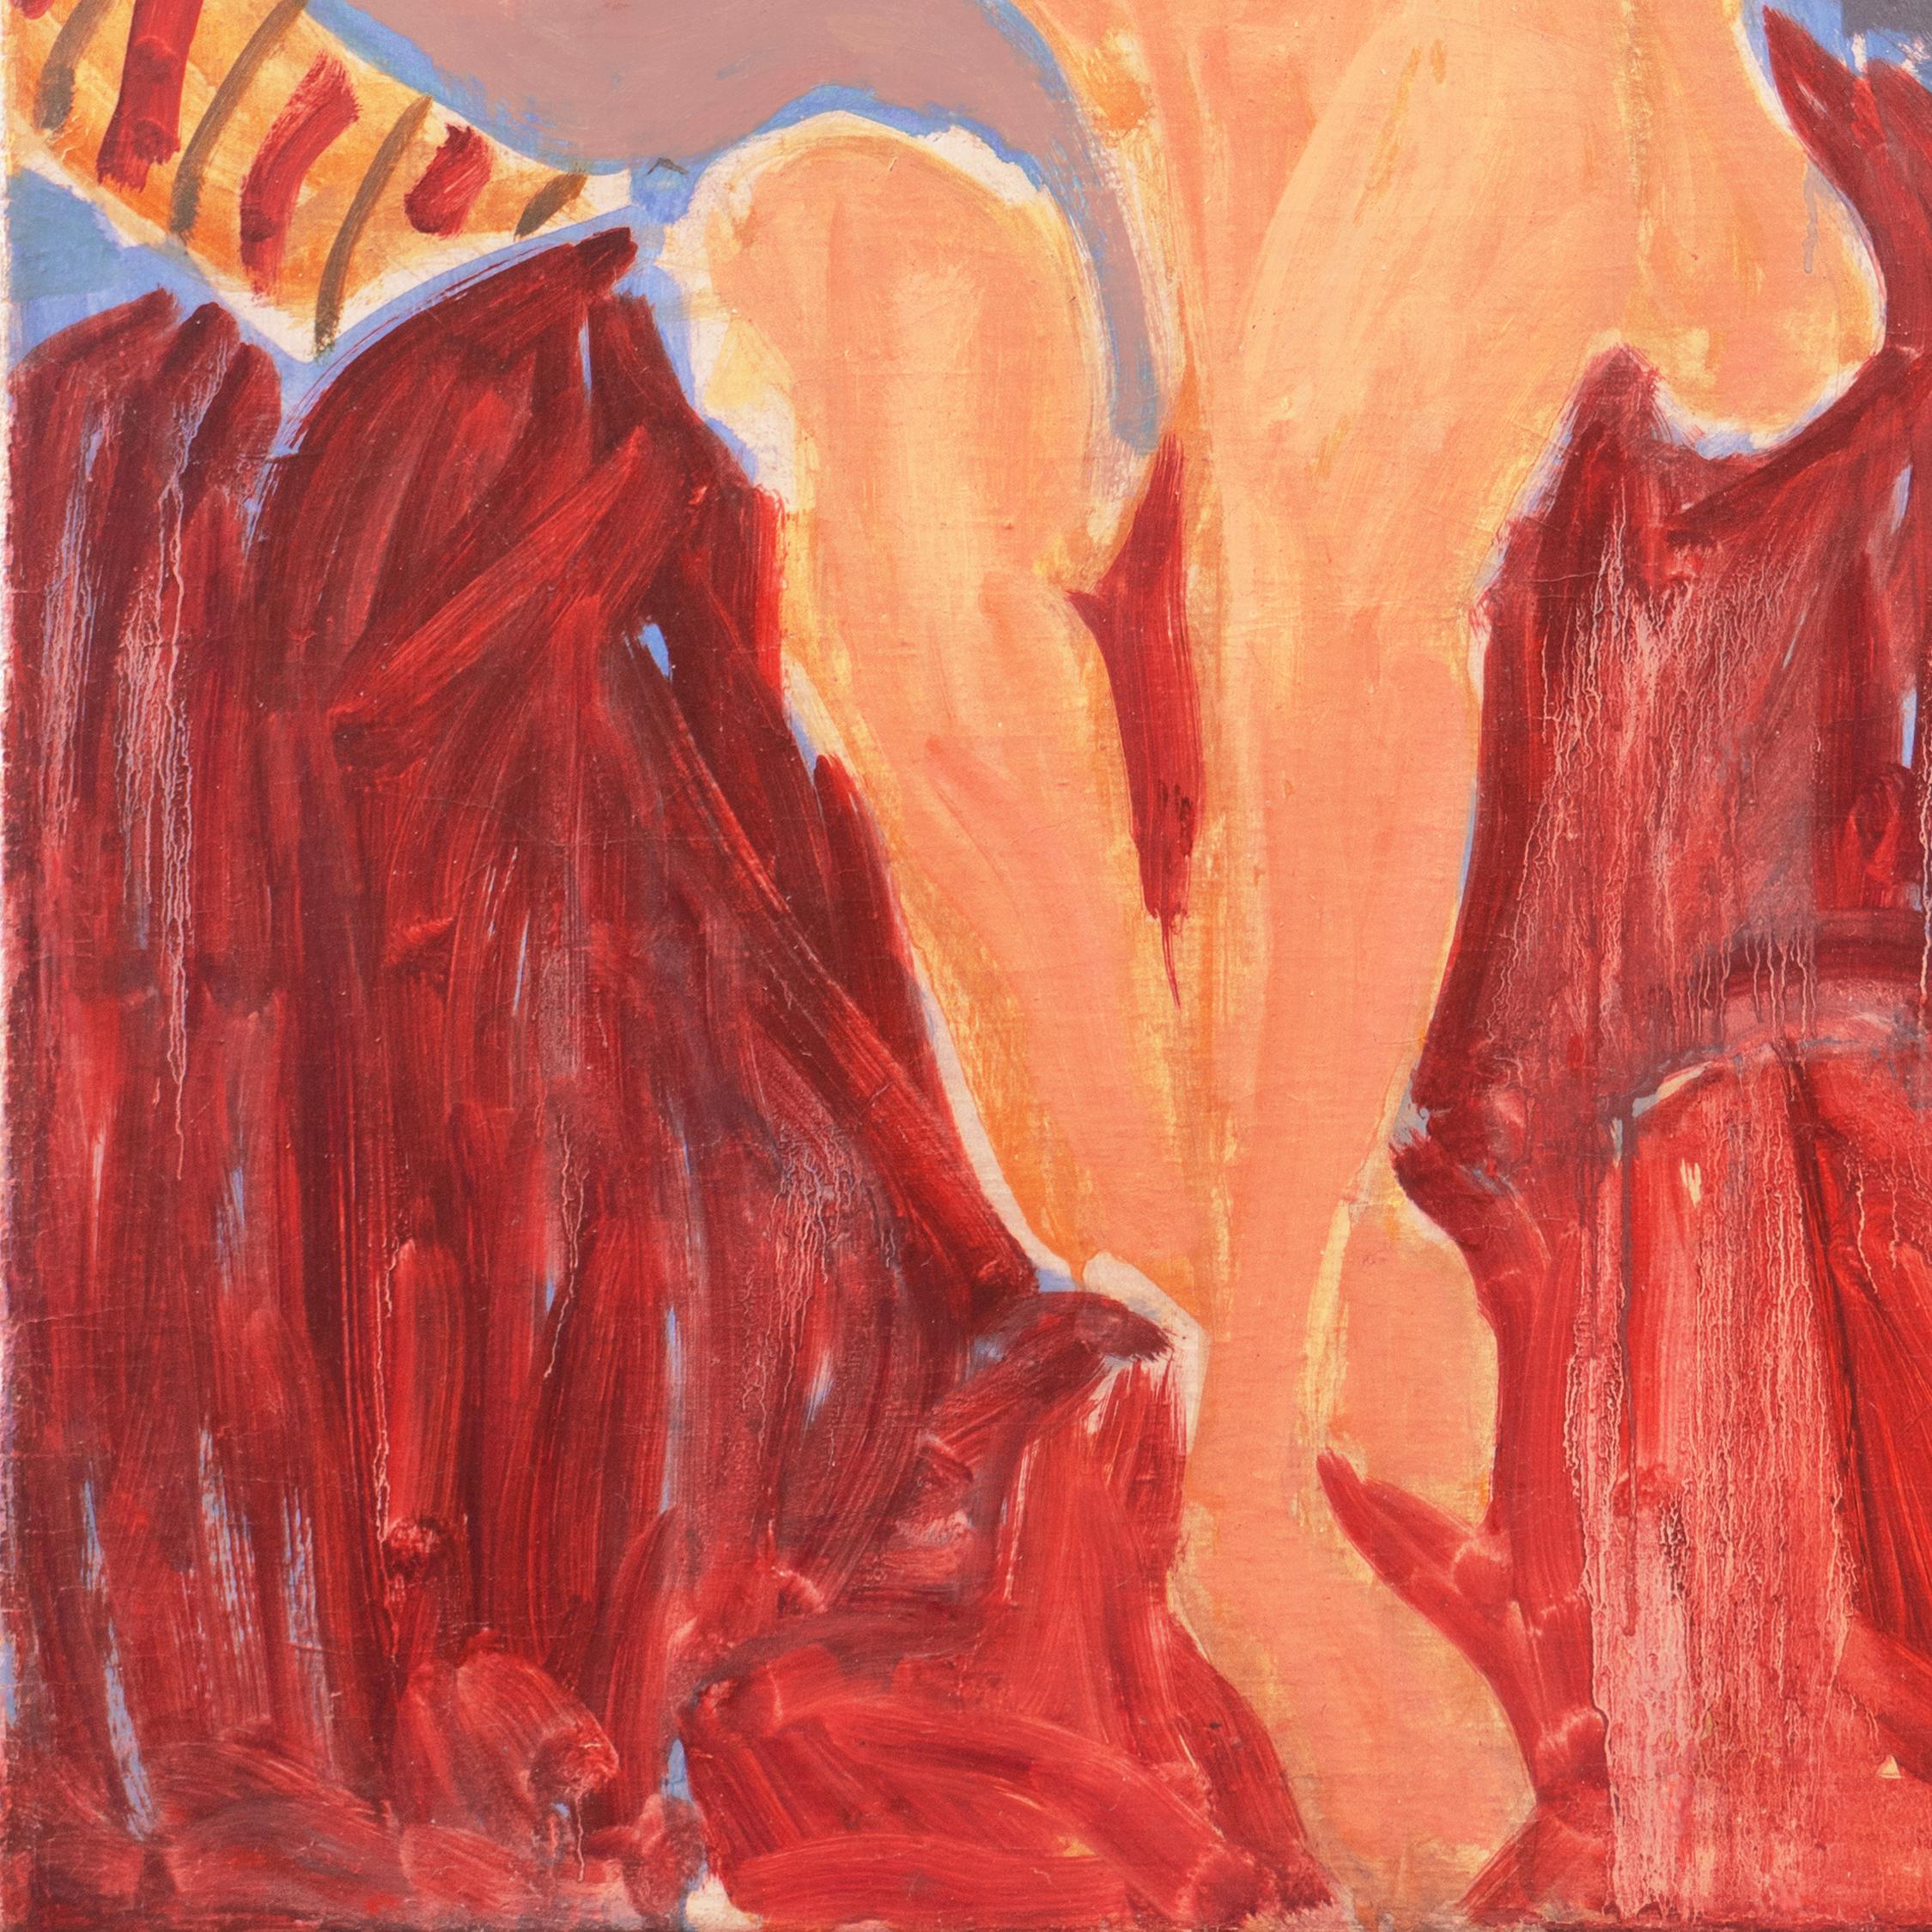 Verso mit dem Nachlassstempel von Victor Di Gesu (Amerikaner, 1914-1988) gestempelt und um 1958 gemalt.

Ein bedeutendes Ölgemälde im postimpressionistischen Stil, das eine junge Frau zeigt, die nackt auf einer rubinroten Decke sitzt und sich an ein